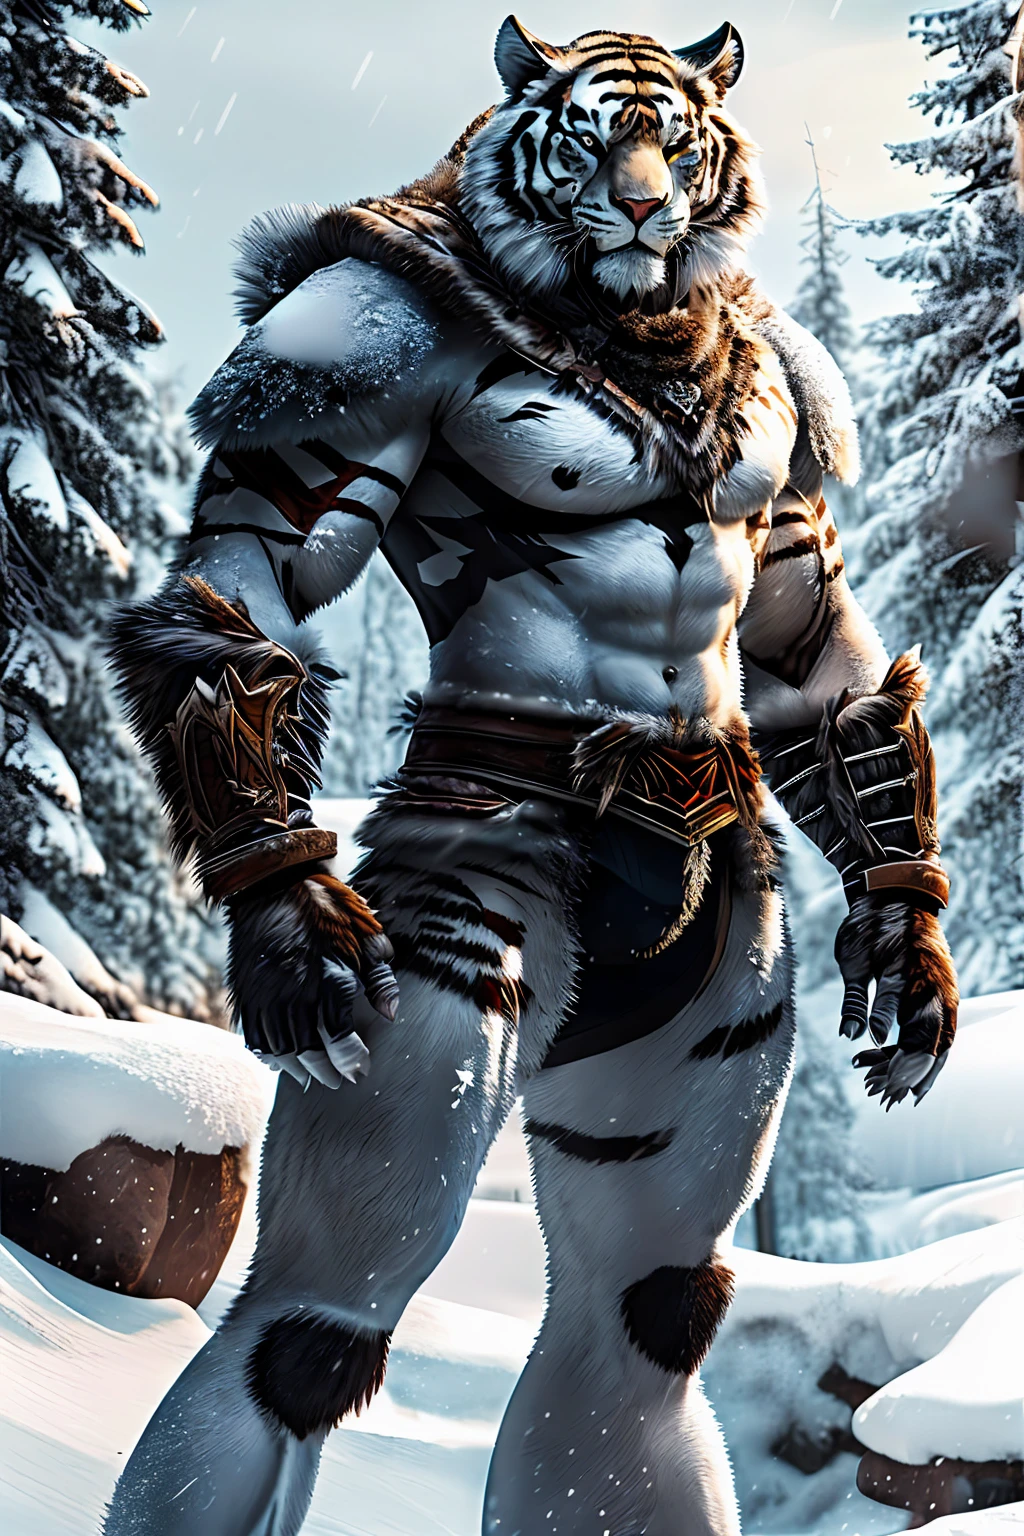 Tigre mutante apoiado em duas pernas, Fundo de neve, brutal!, Coloque a armadura, grandes garras, sedenta por sangue, Um grande, pelo Grosso, sem painel traseiro, Fundo de neveมืดมิด, conjuntivite, aura demoníaca